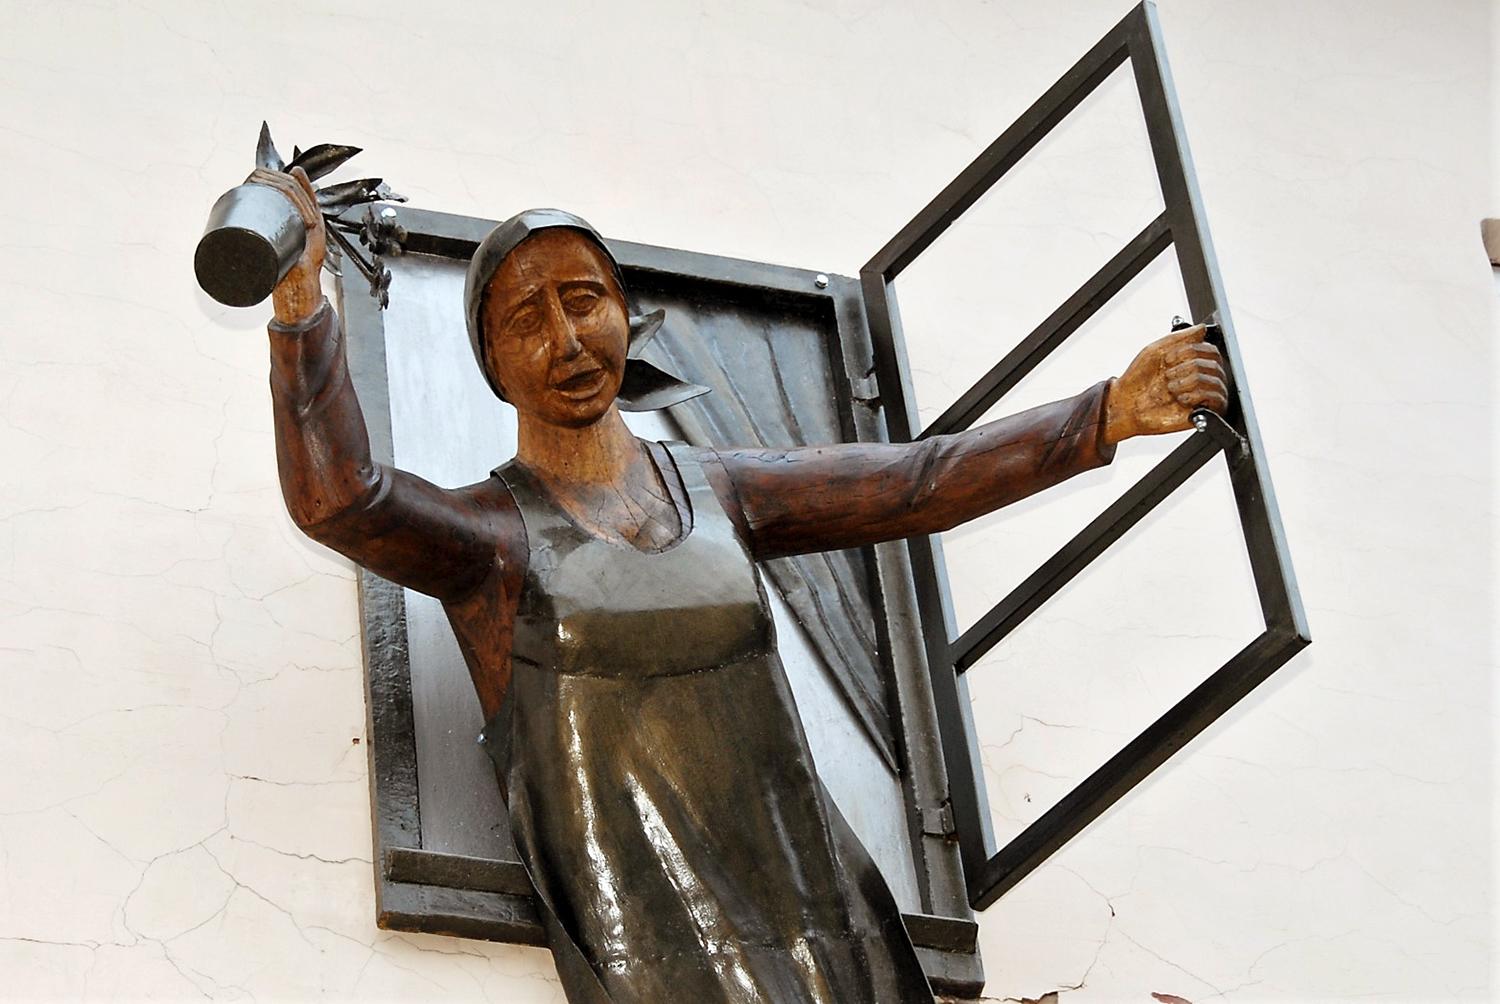 Ukmergėje – dar viena skulptūra / Skulptūra „Moteris lange“ ukmergiškius pasitinka nuo pastato Kauno gatvėje.